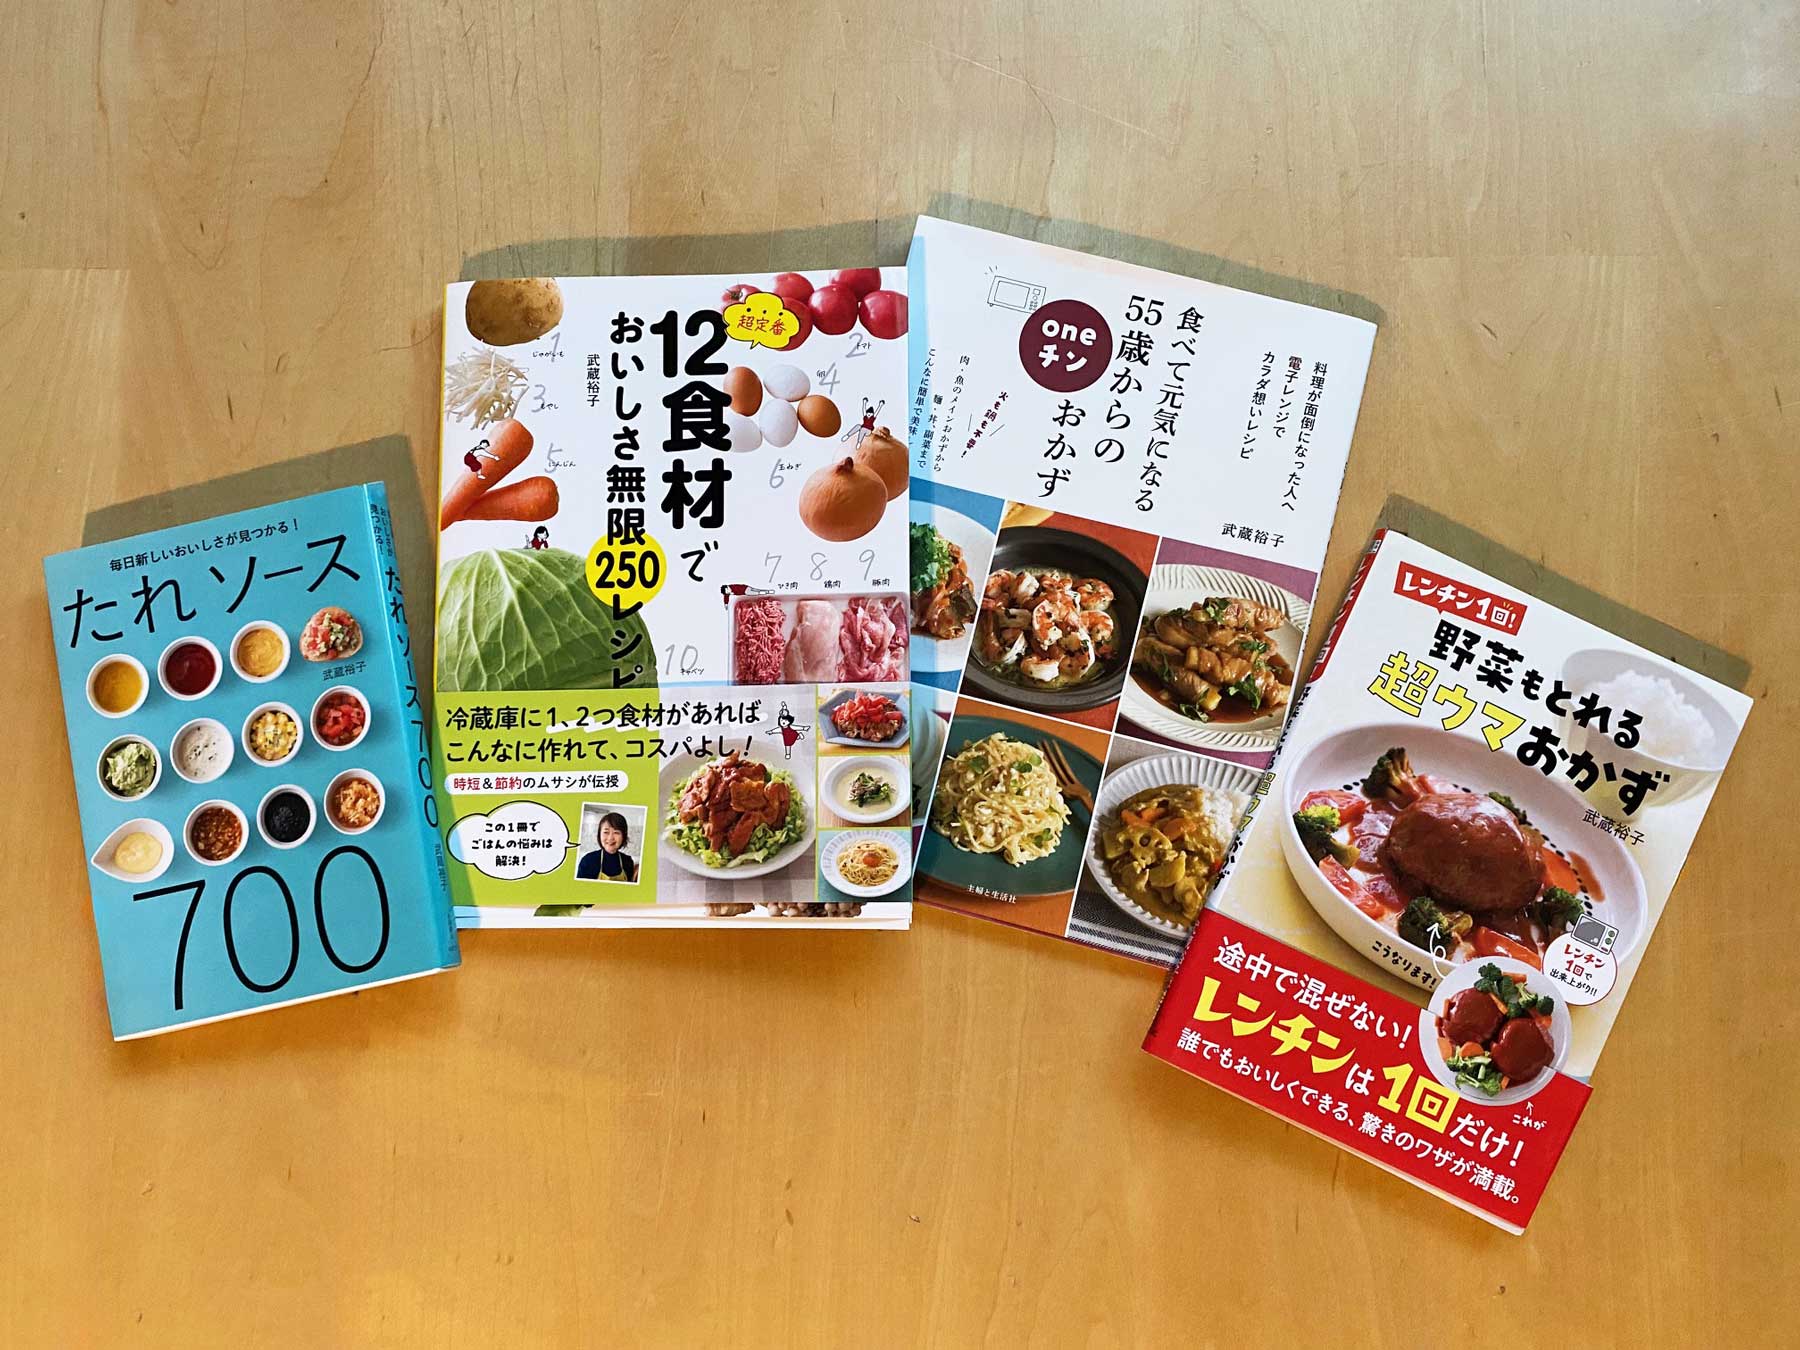 武蔵裕子さんの著書『たれソース700』（永岡書店）『12食材でおいしさ無限250レシピ』（新星出版社）、『食べて元気になる 55歳からのoneチンおかず』（主婦と生活社）『レンチン1回！野菜もとれる超ウマおかず』（新星出版社）